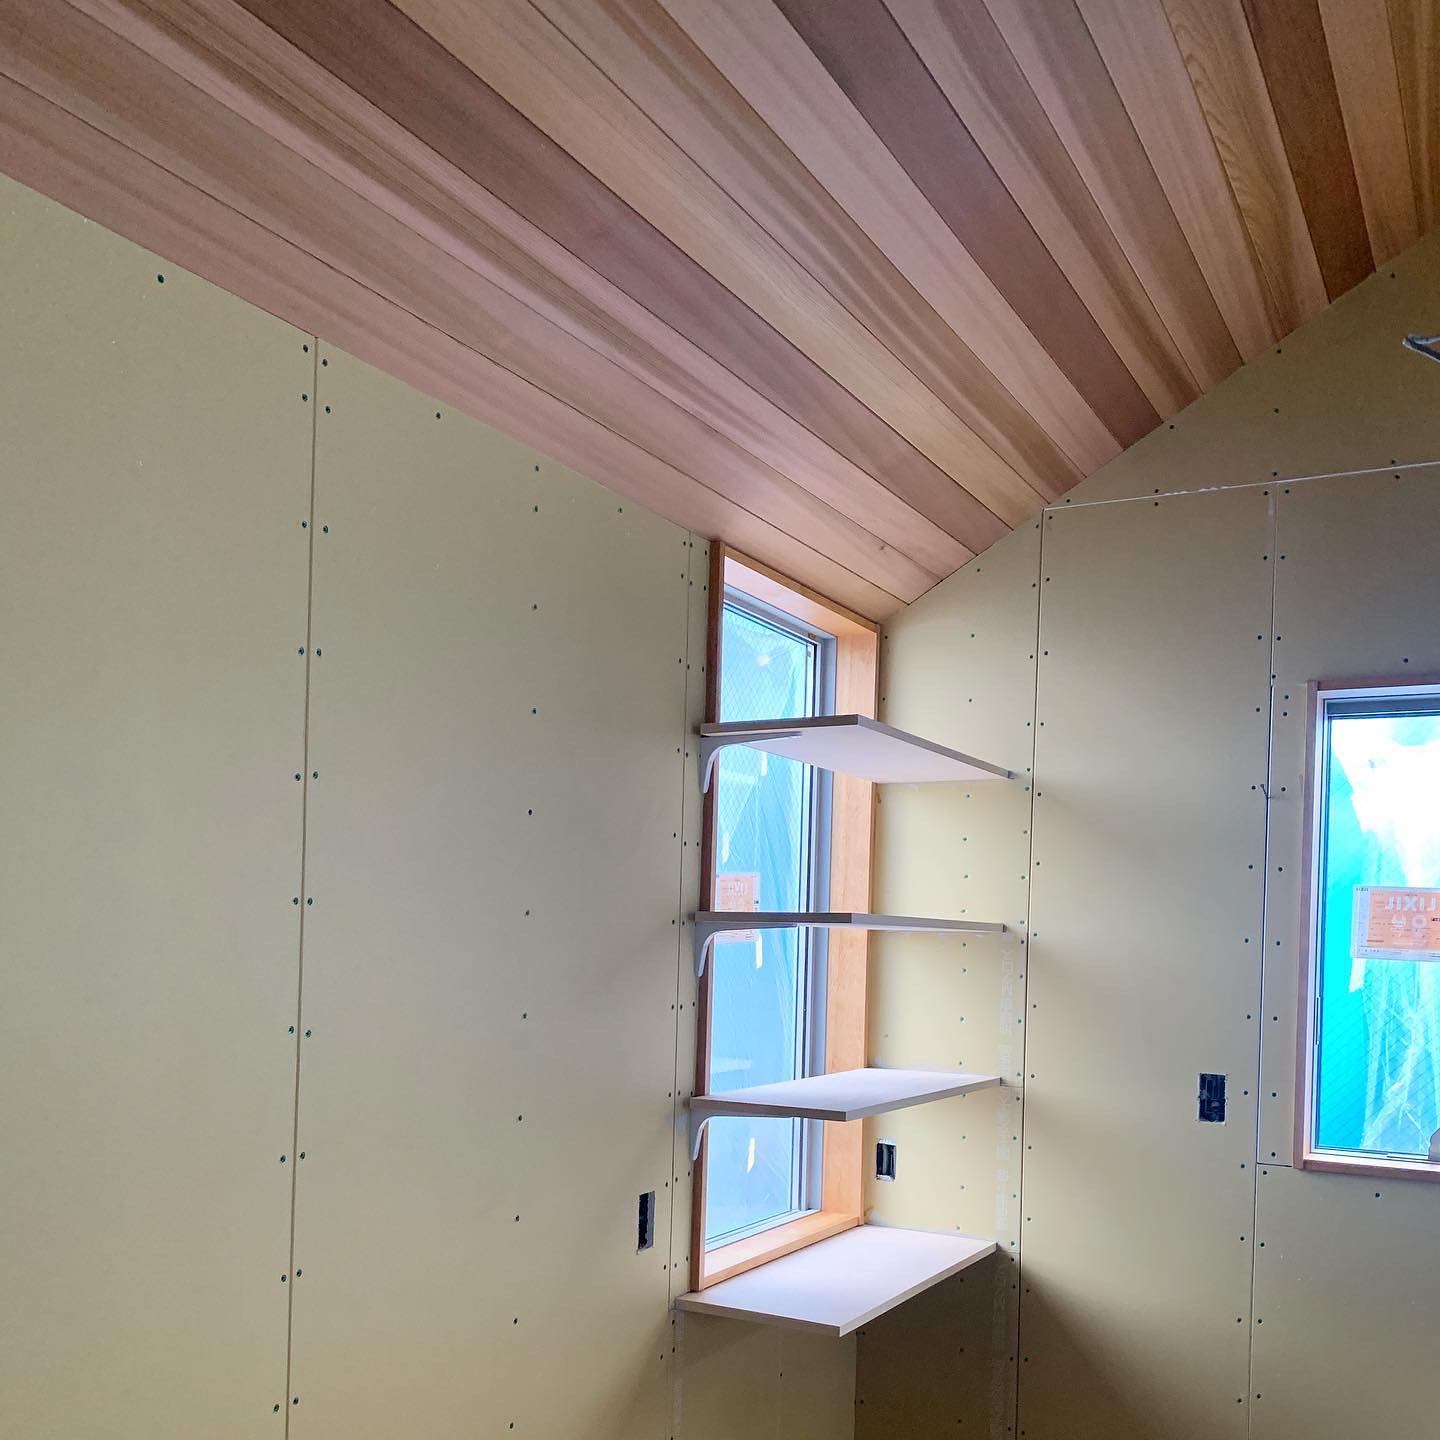 現場打ち合わせ。天井の一部を勾配+板貼り、いい感じ。 #設計事務所 #建築家 #住宅 #建築 #渡辺泰敏建築設計事務所 #愛知 #東京 #家づくり #デザイン #リノベーション